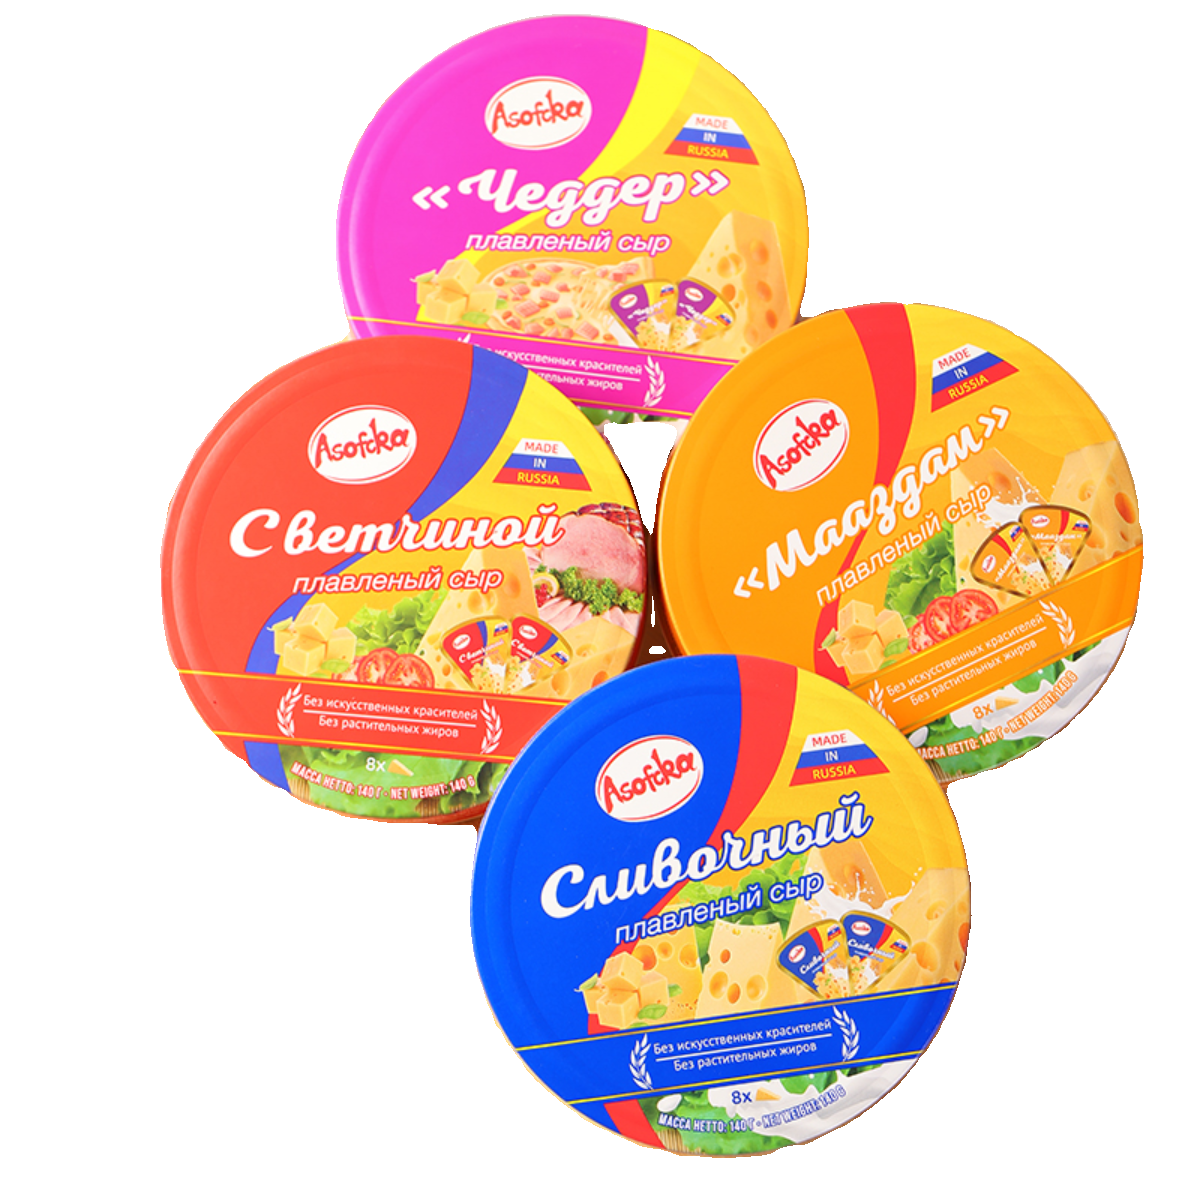 俄罗斯原装进口芝士奶酪三角型儿童宝宝零食干酪涂抹烘焙即食食品